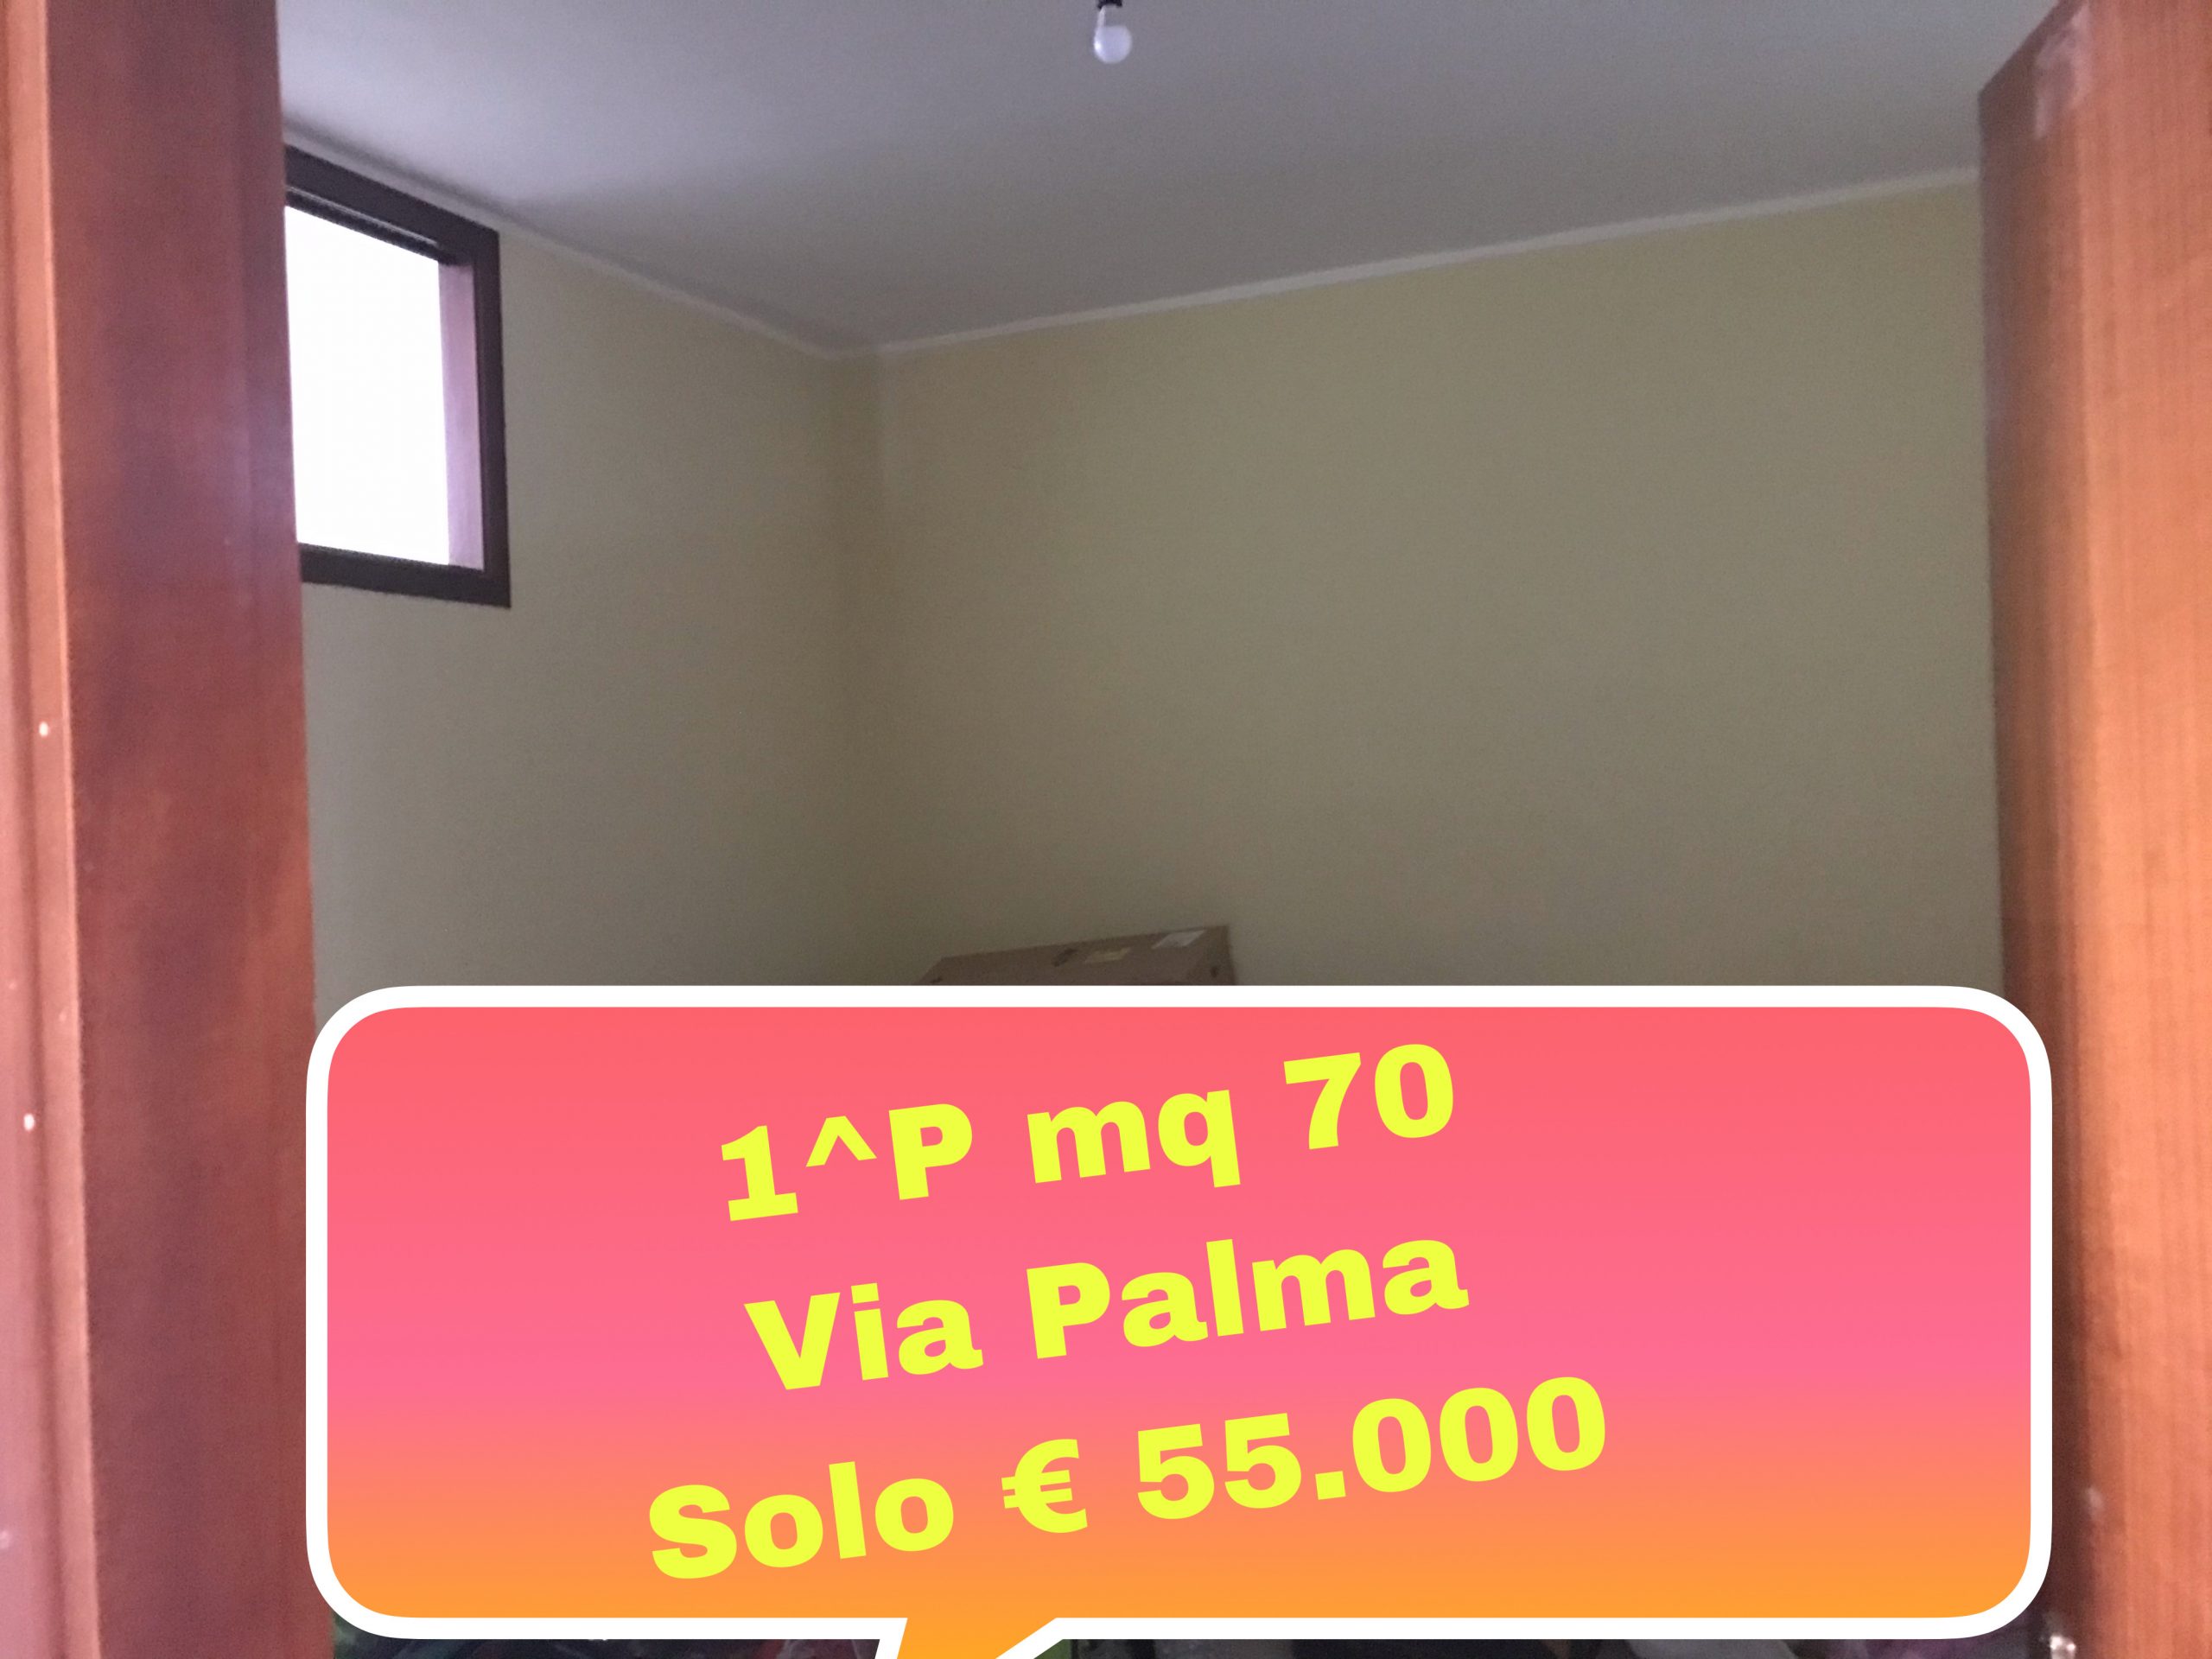 Appartamento 75 m² in via Palma primo piano